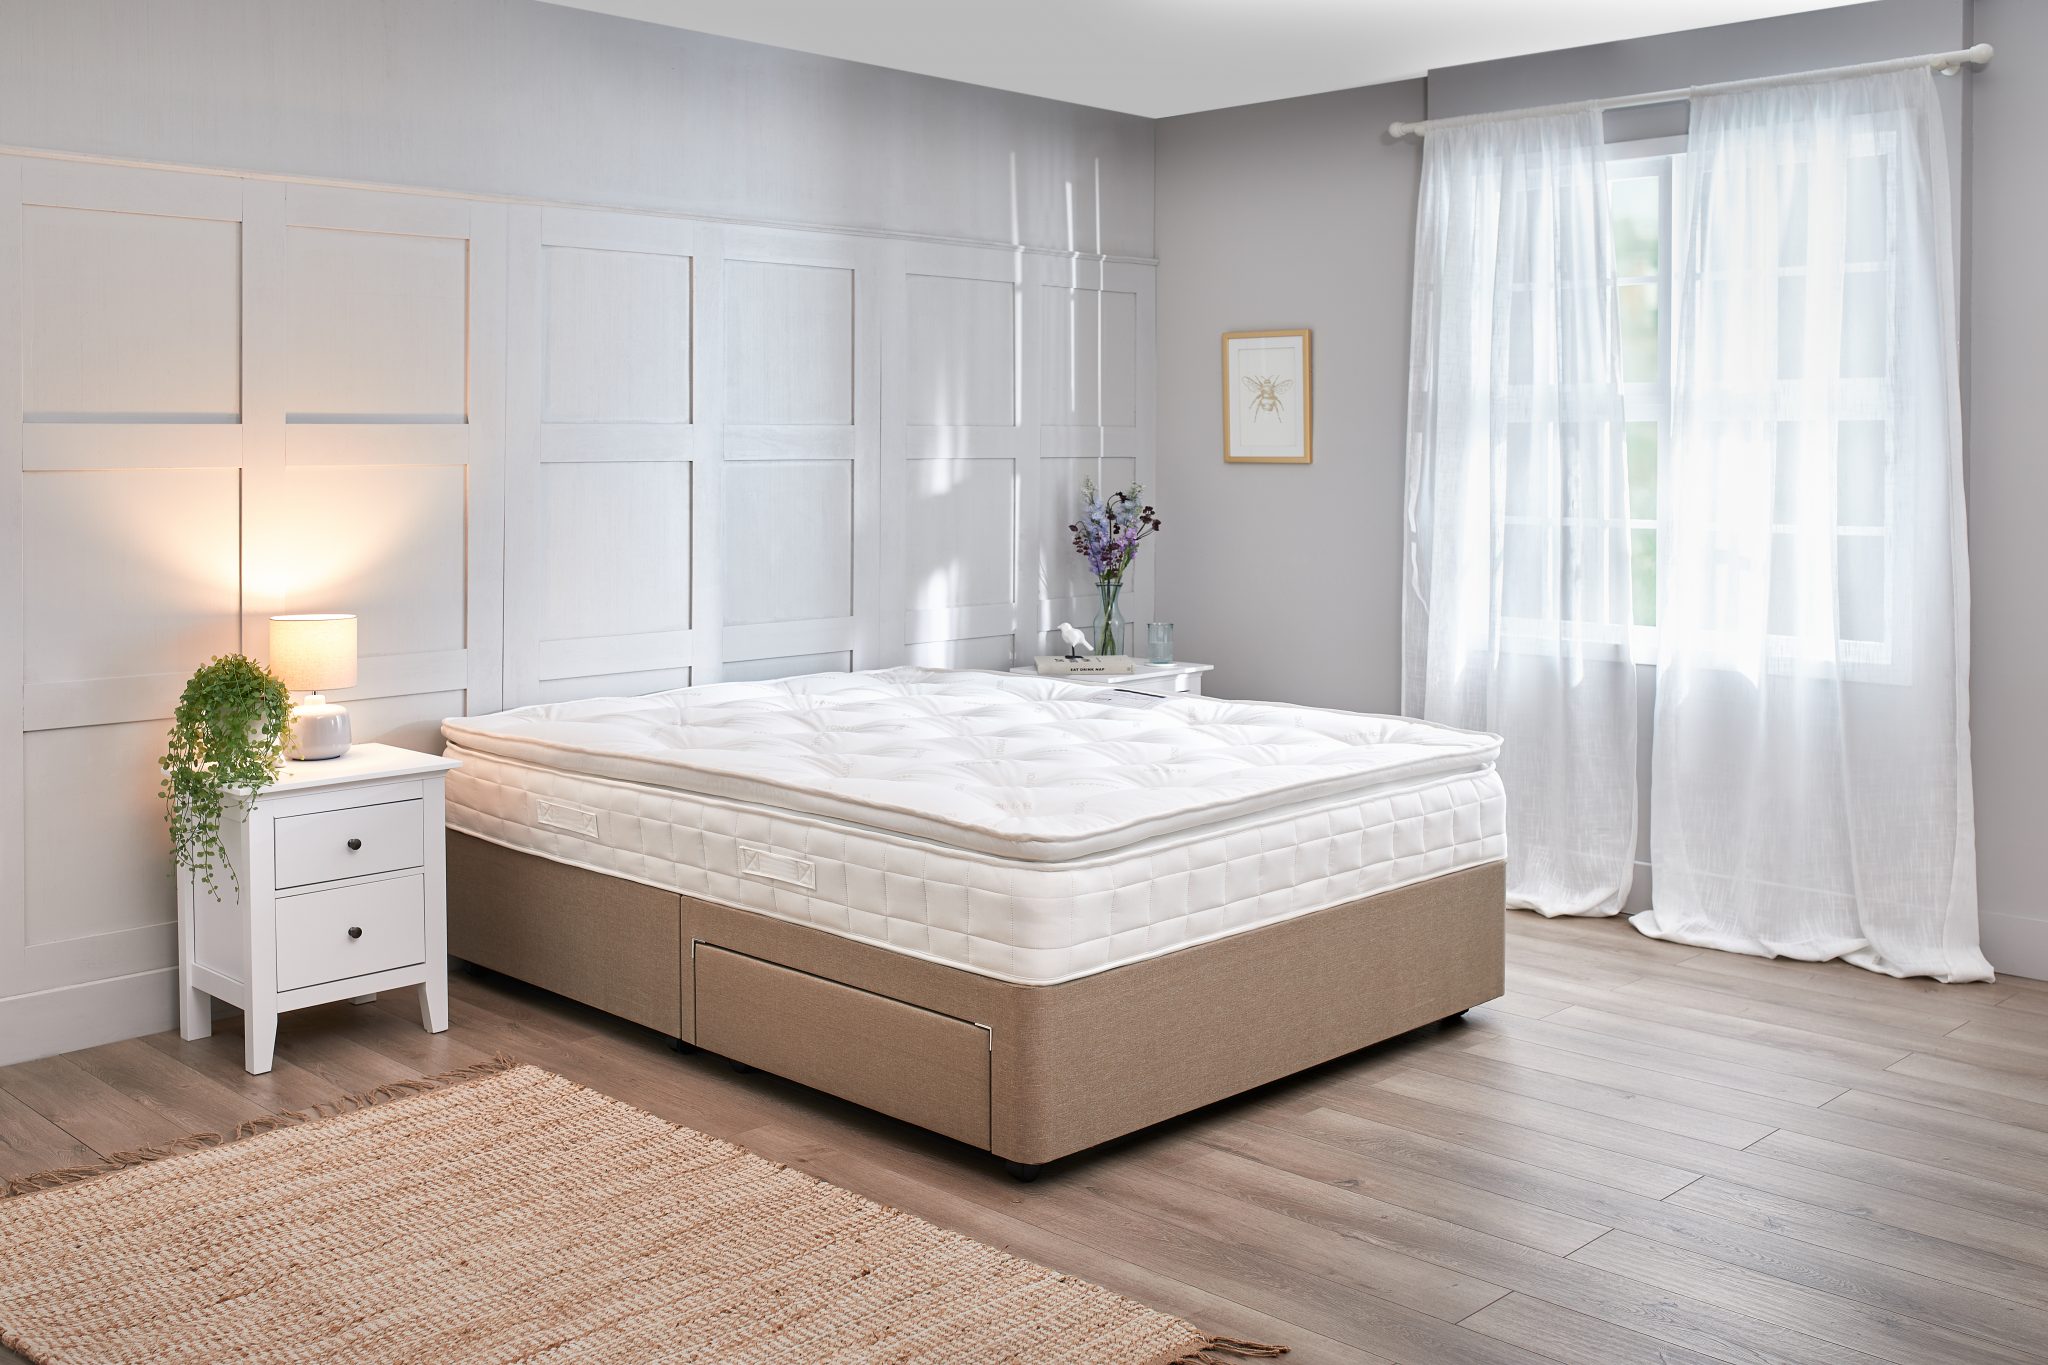 Premier Inn Luxury Beds - Premier Inn at Home